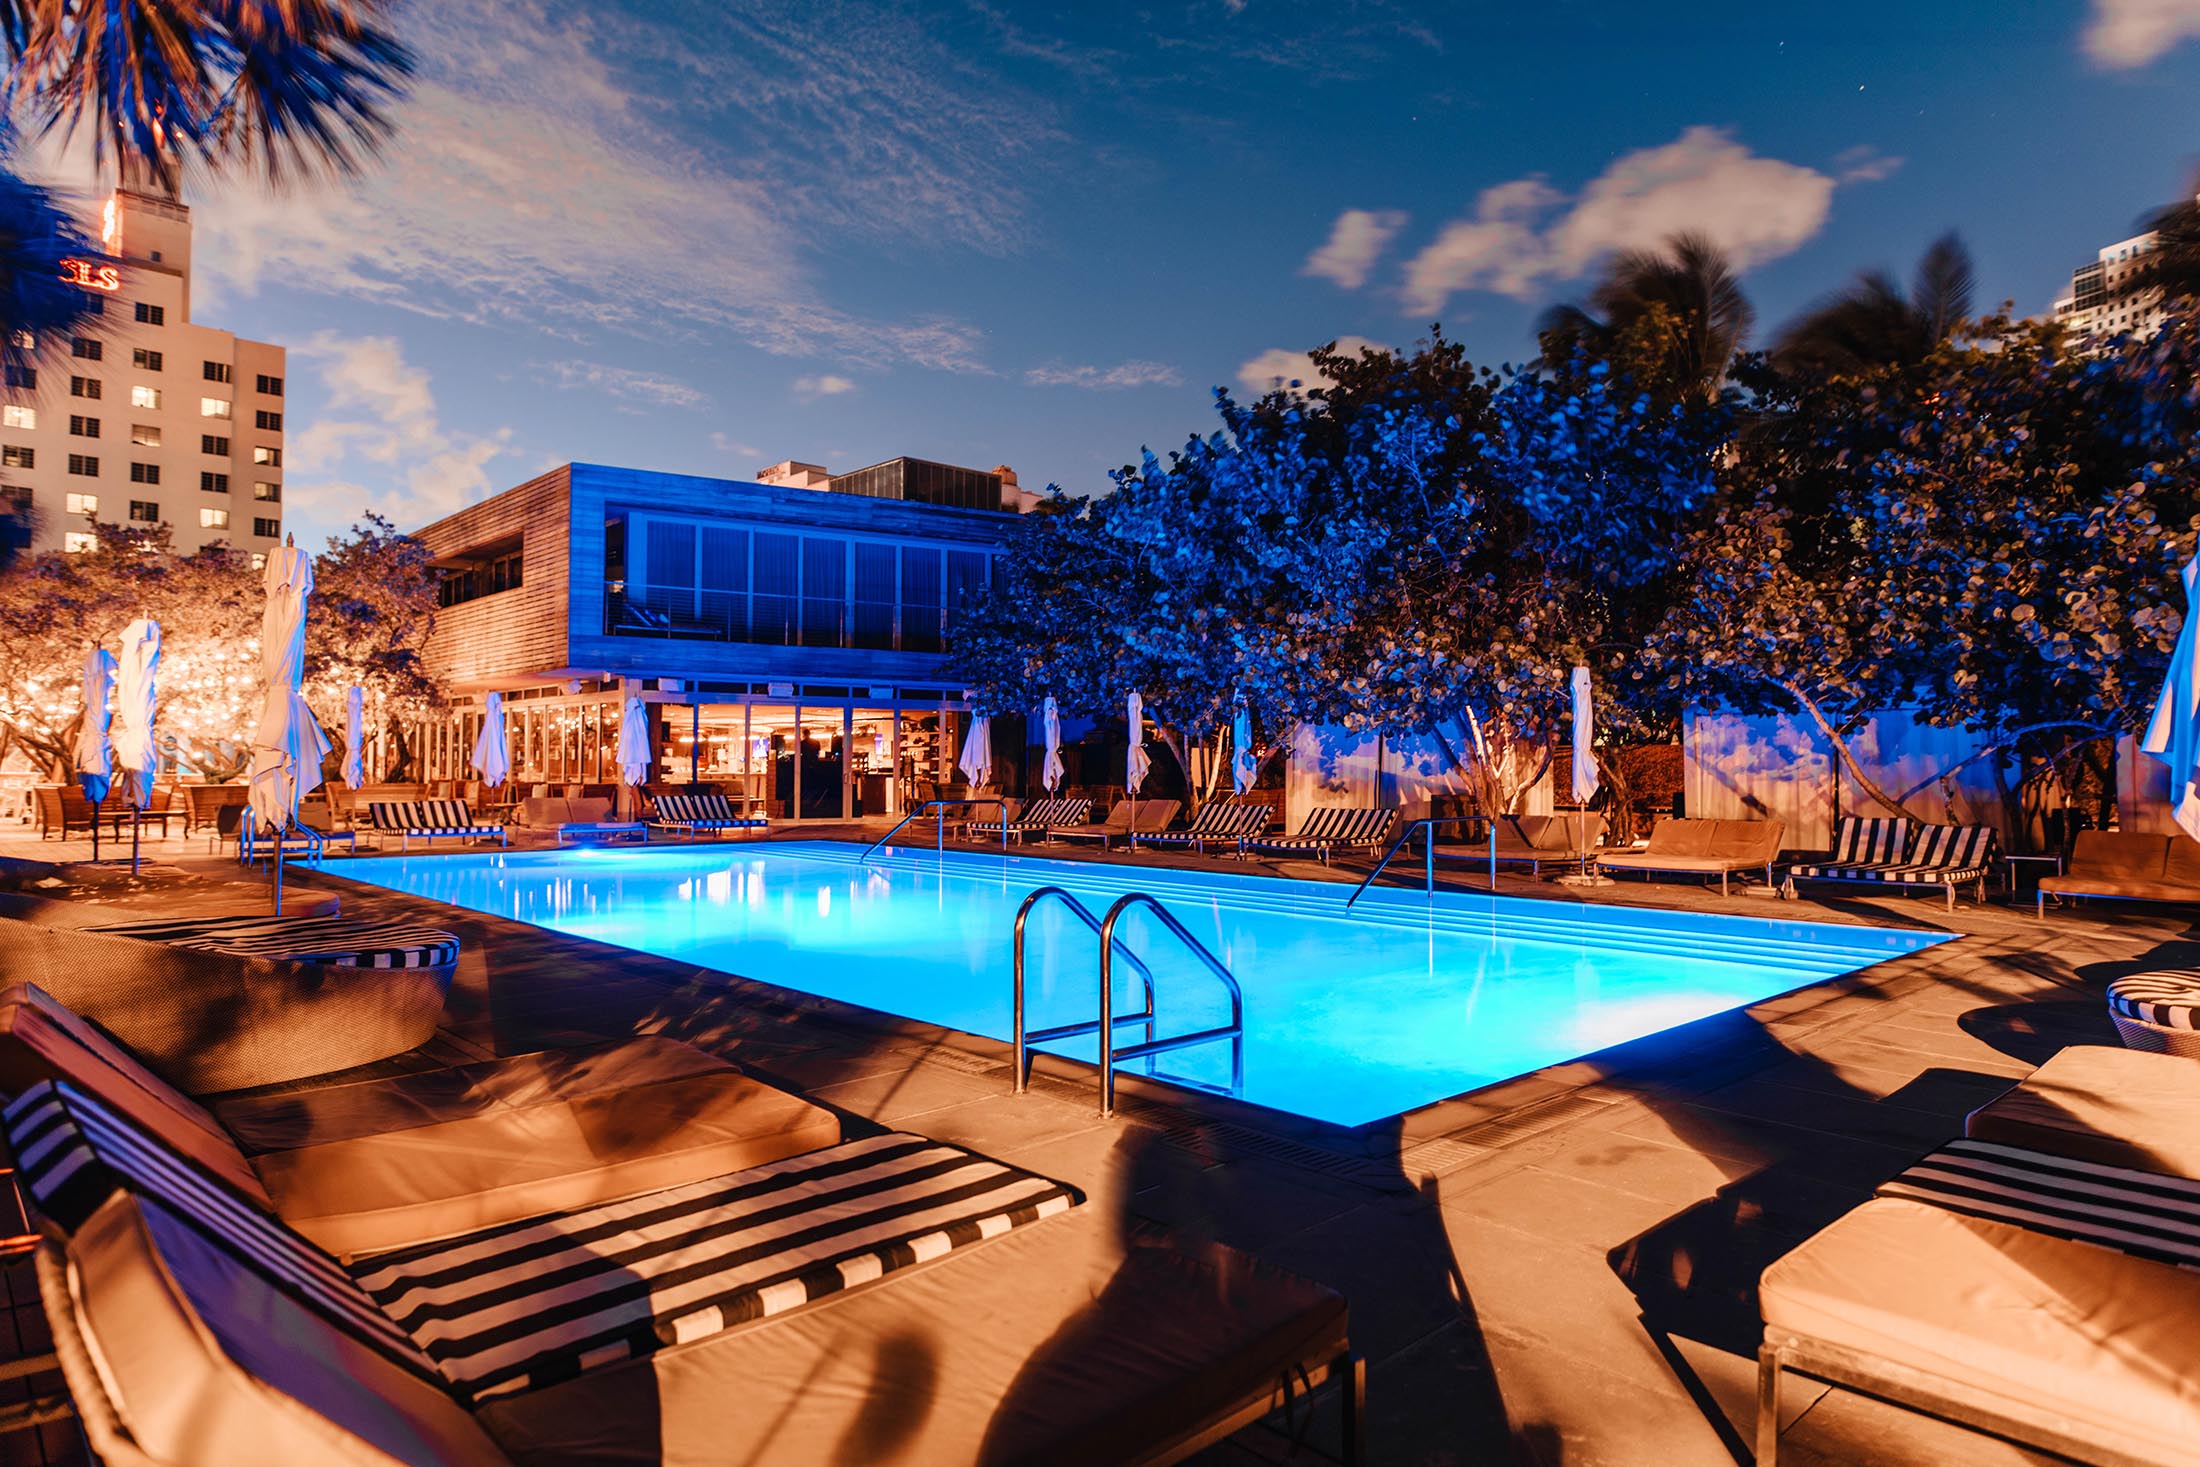 Best Pool Parties in Miami - SLS pool party